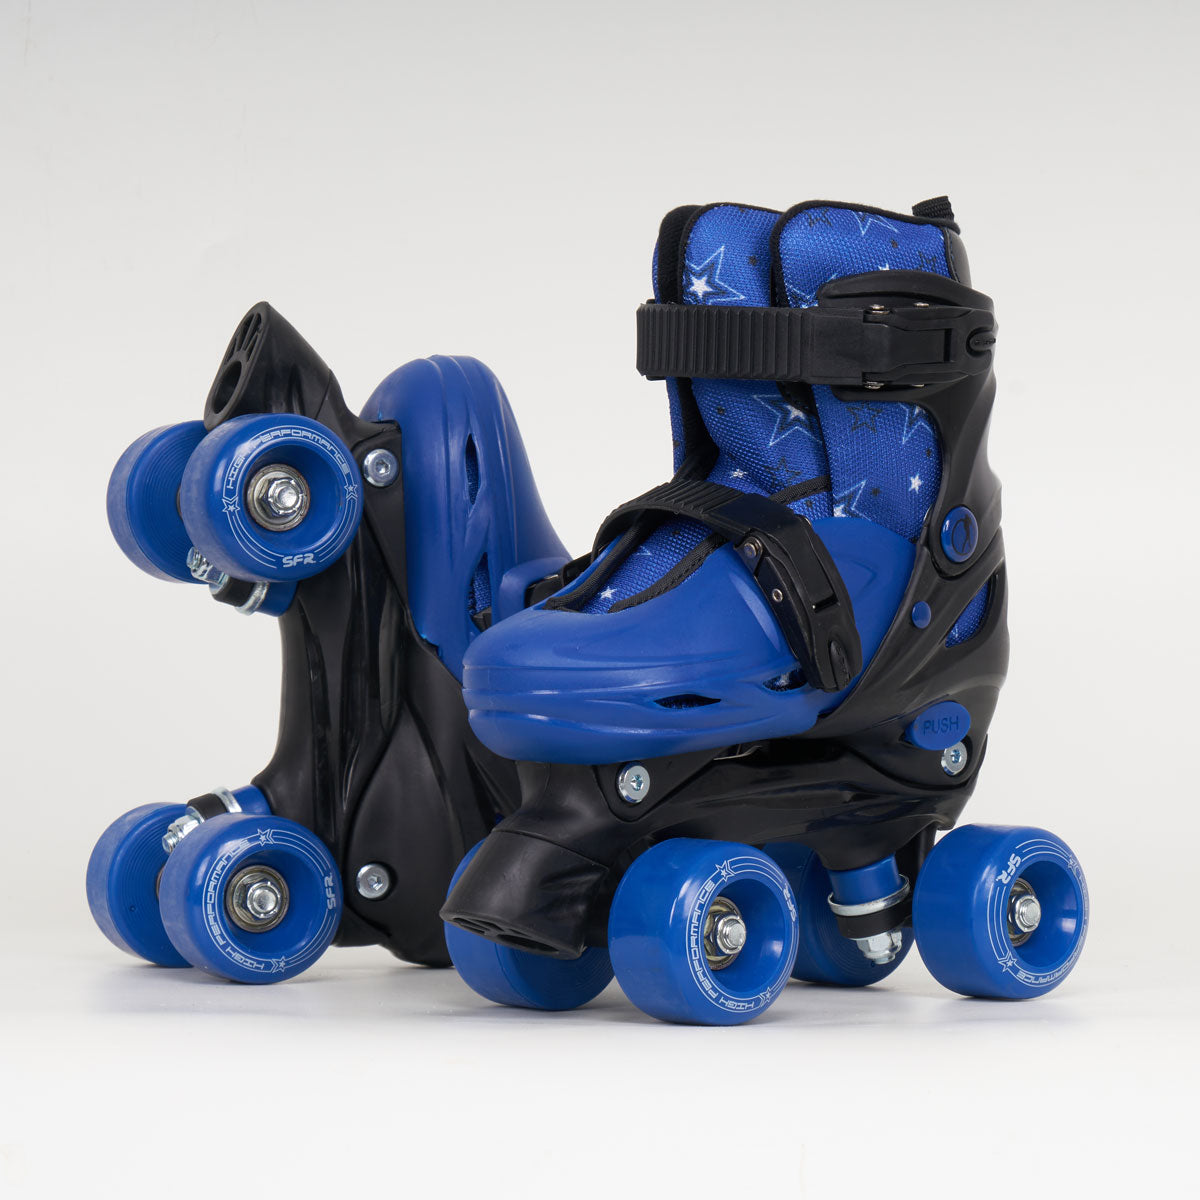 SFR Nebula Junior Adjustable Quad Skates - Blue